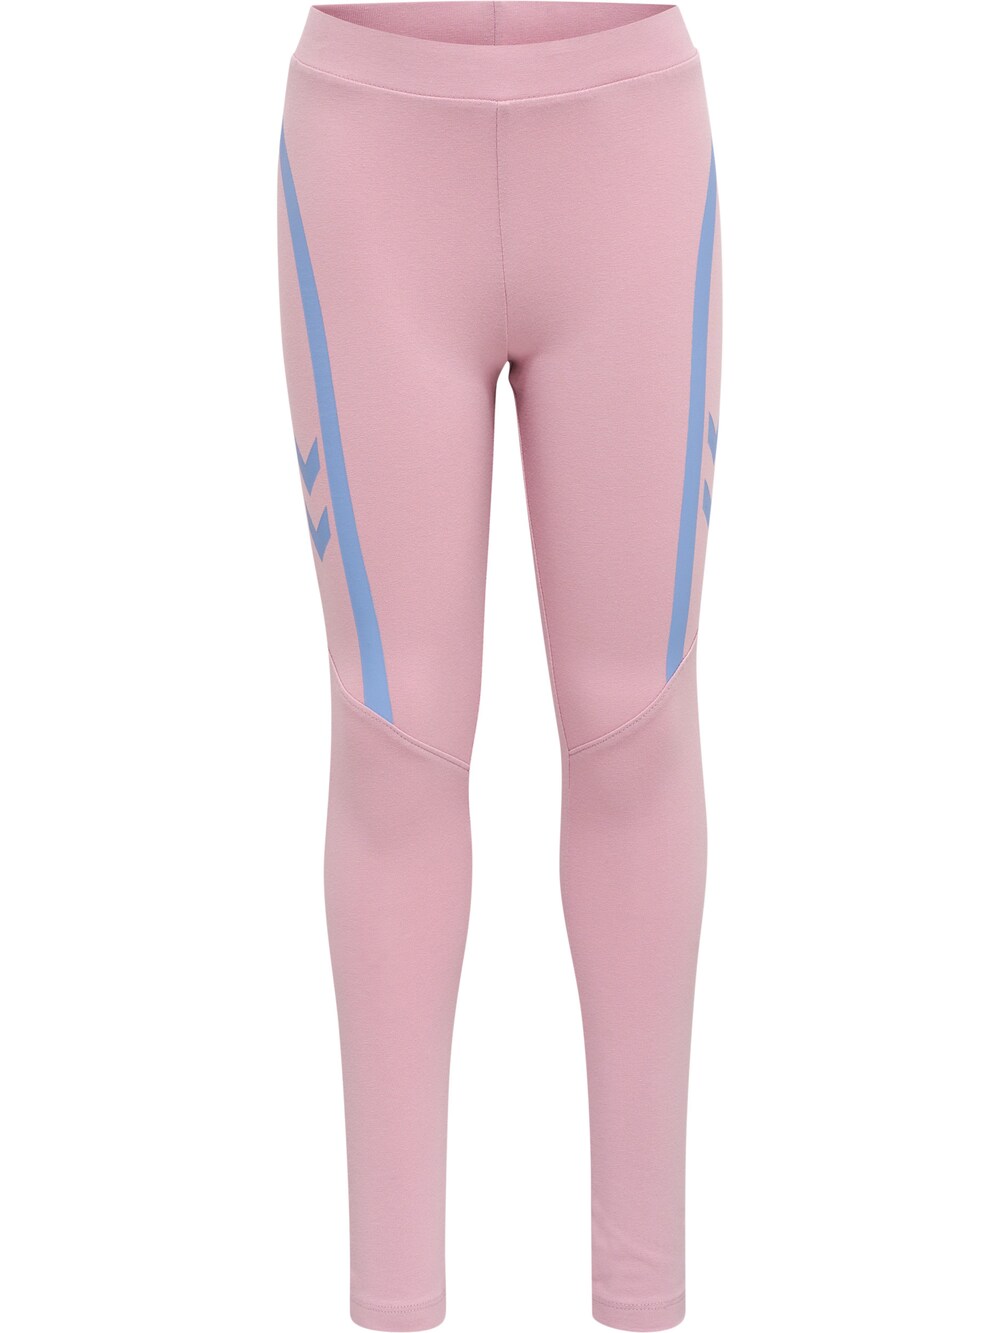 Узкие тренировочные брюки Hummel, розовый